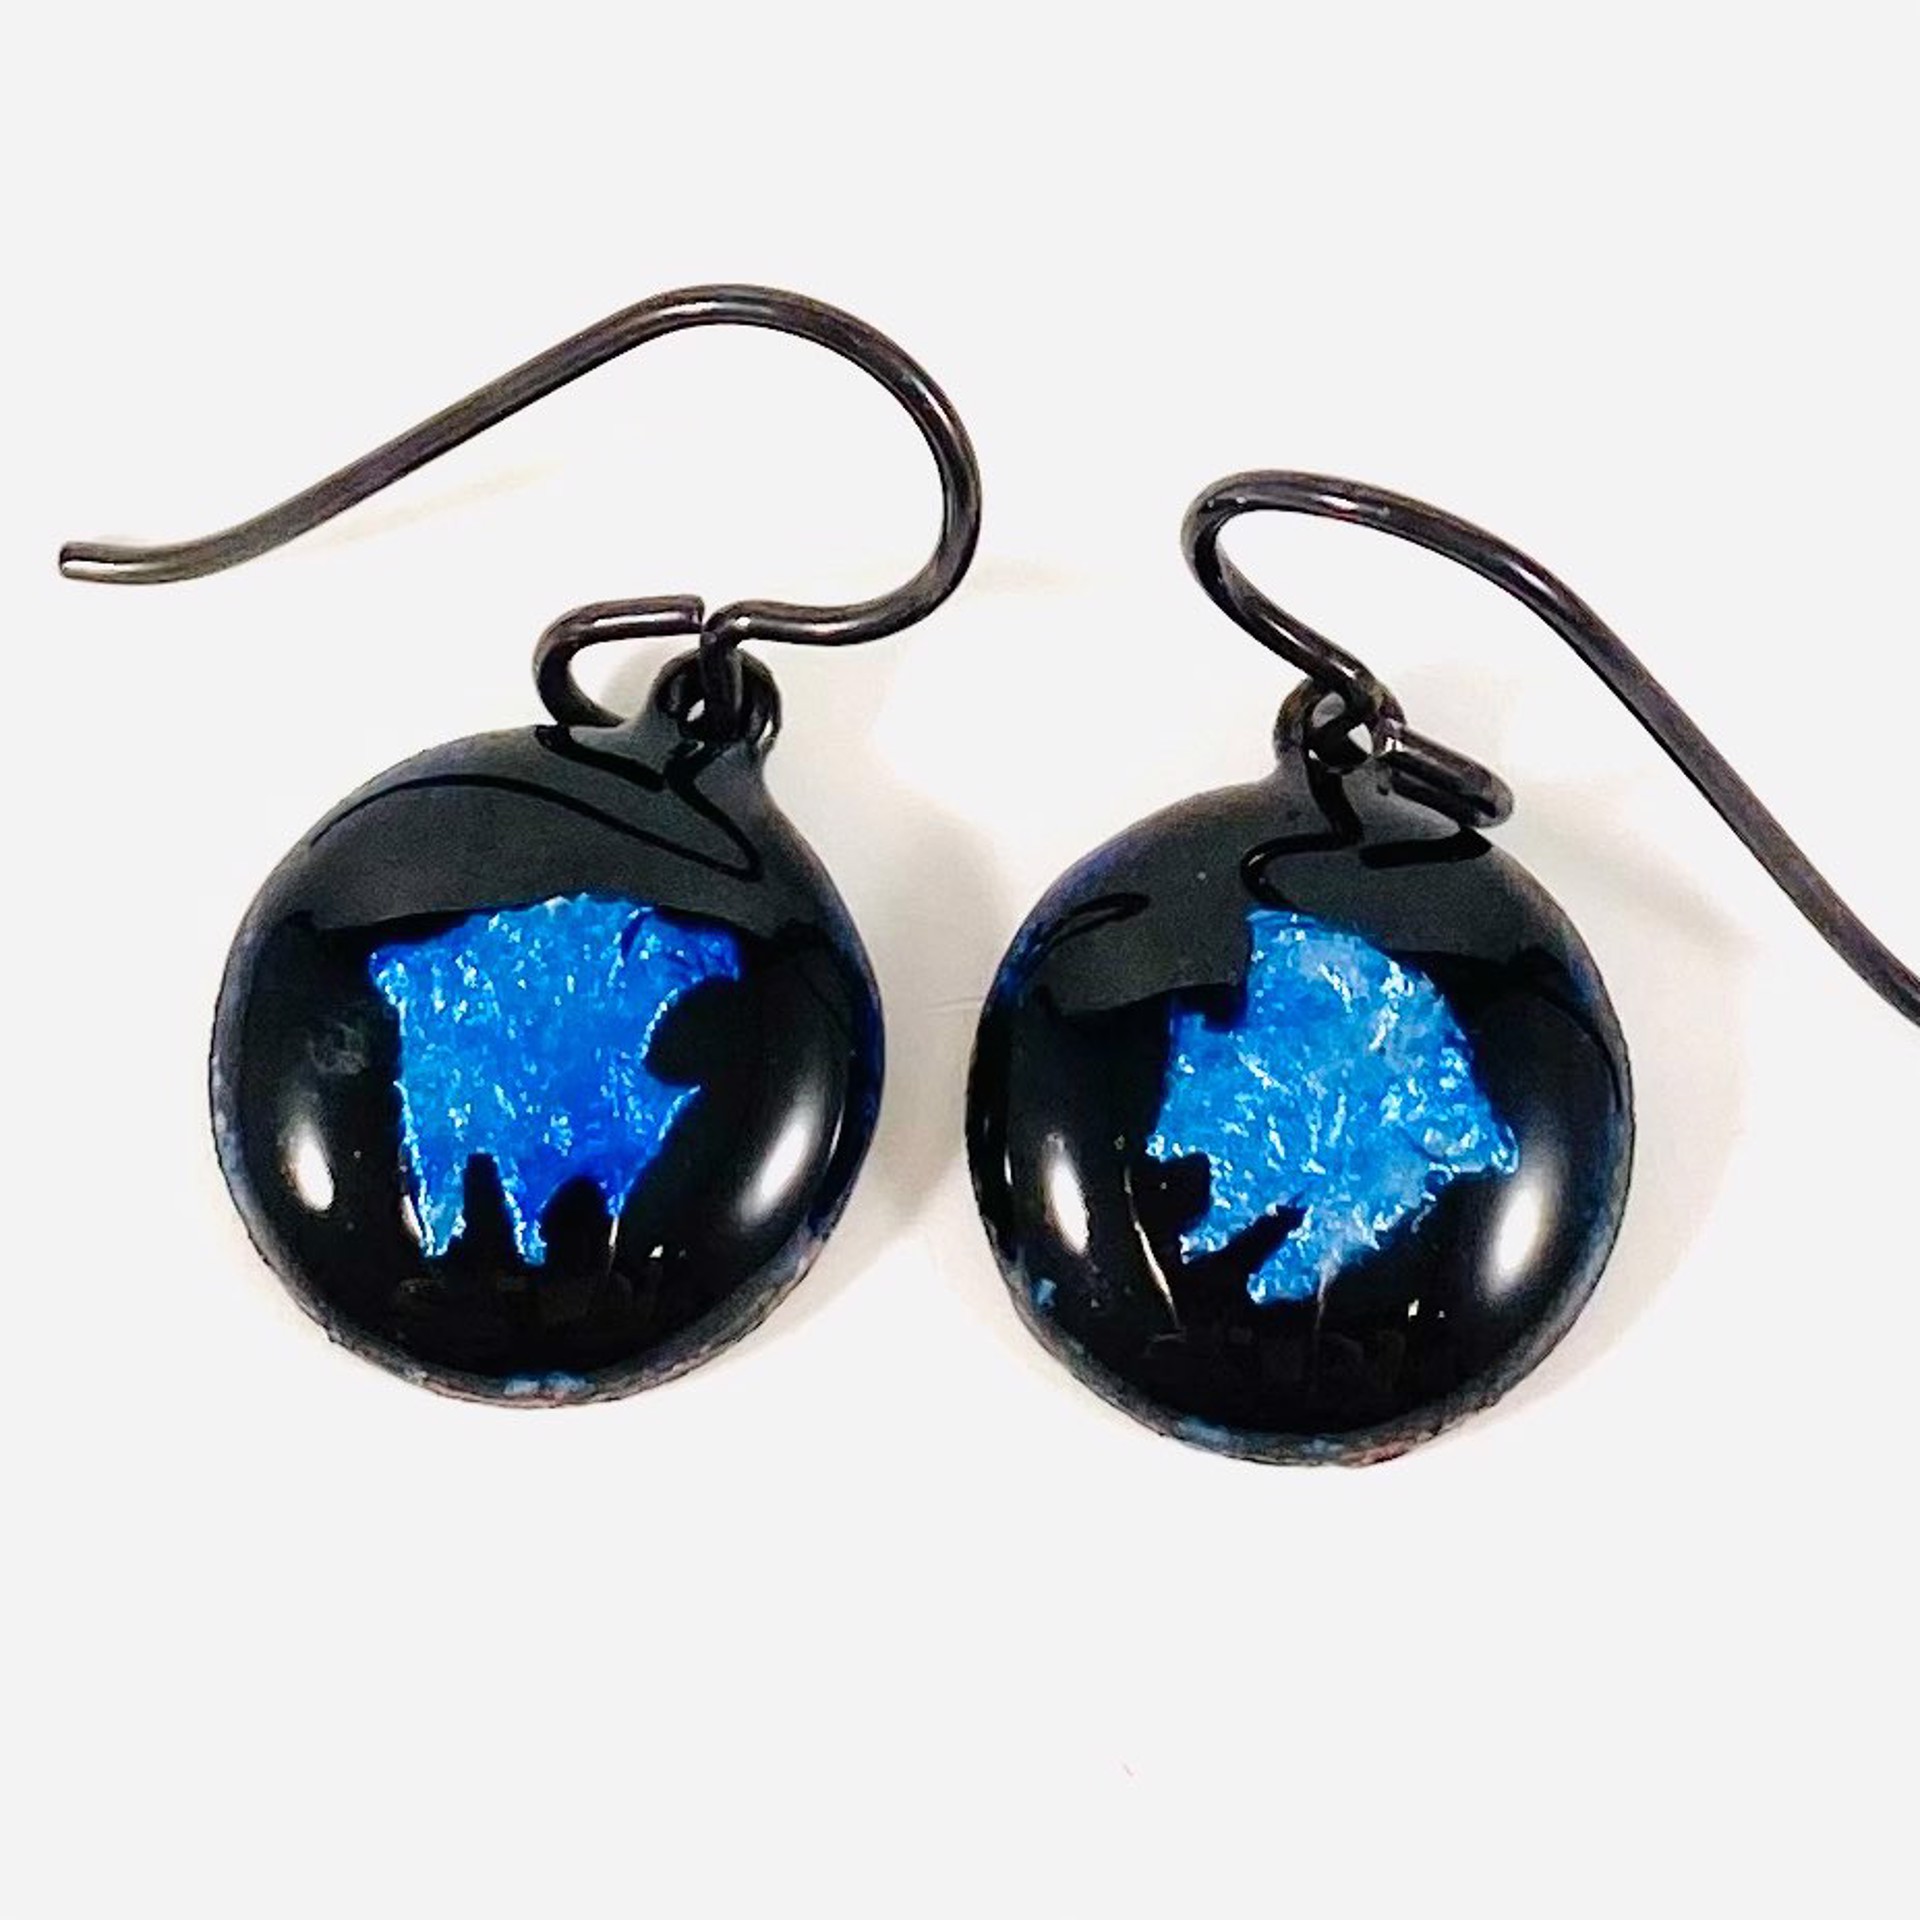 KH22-37 Blue Fish on Black Vitreous Enamel Earrings by Karen Hakim